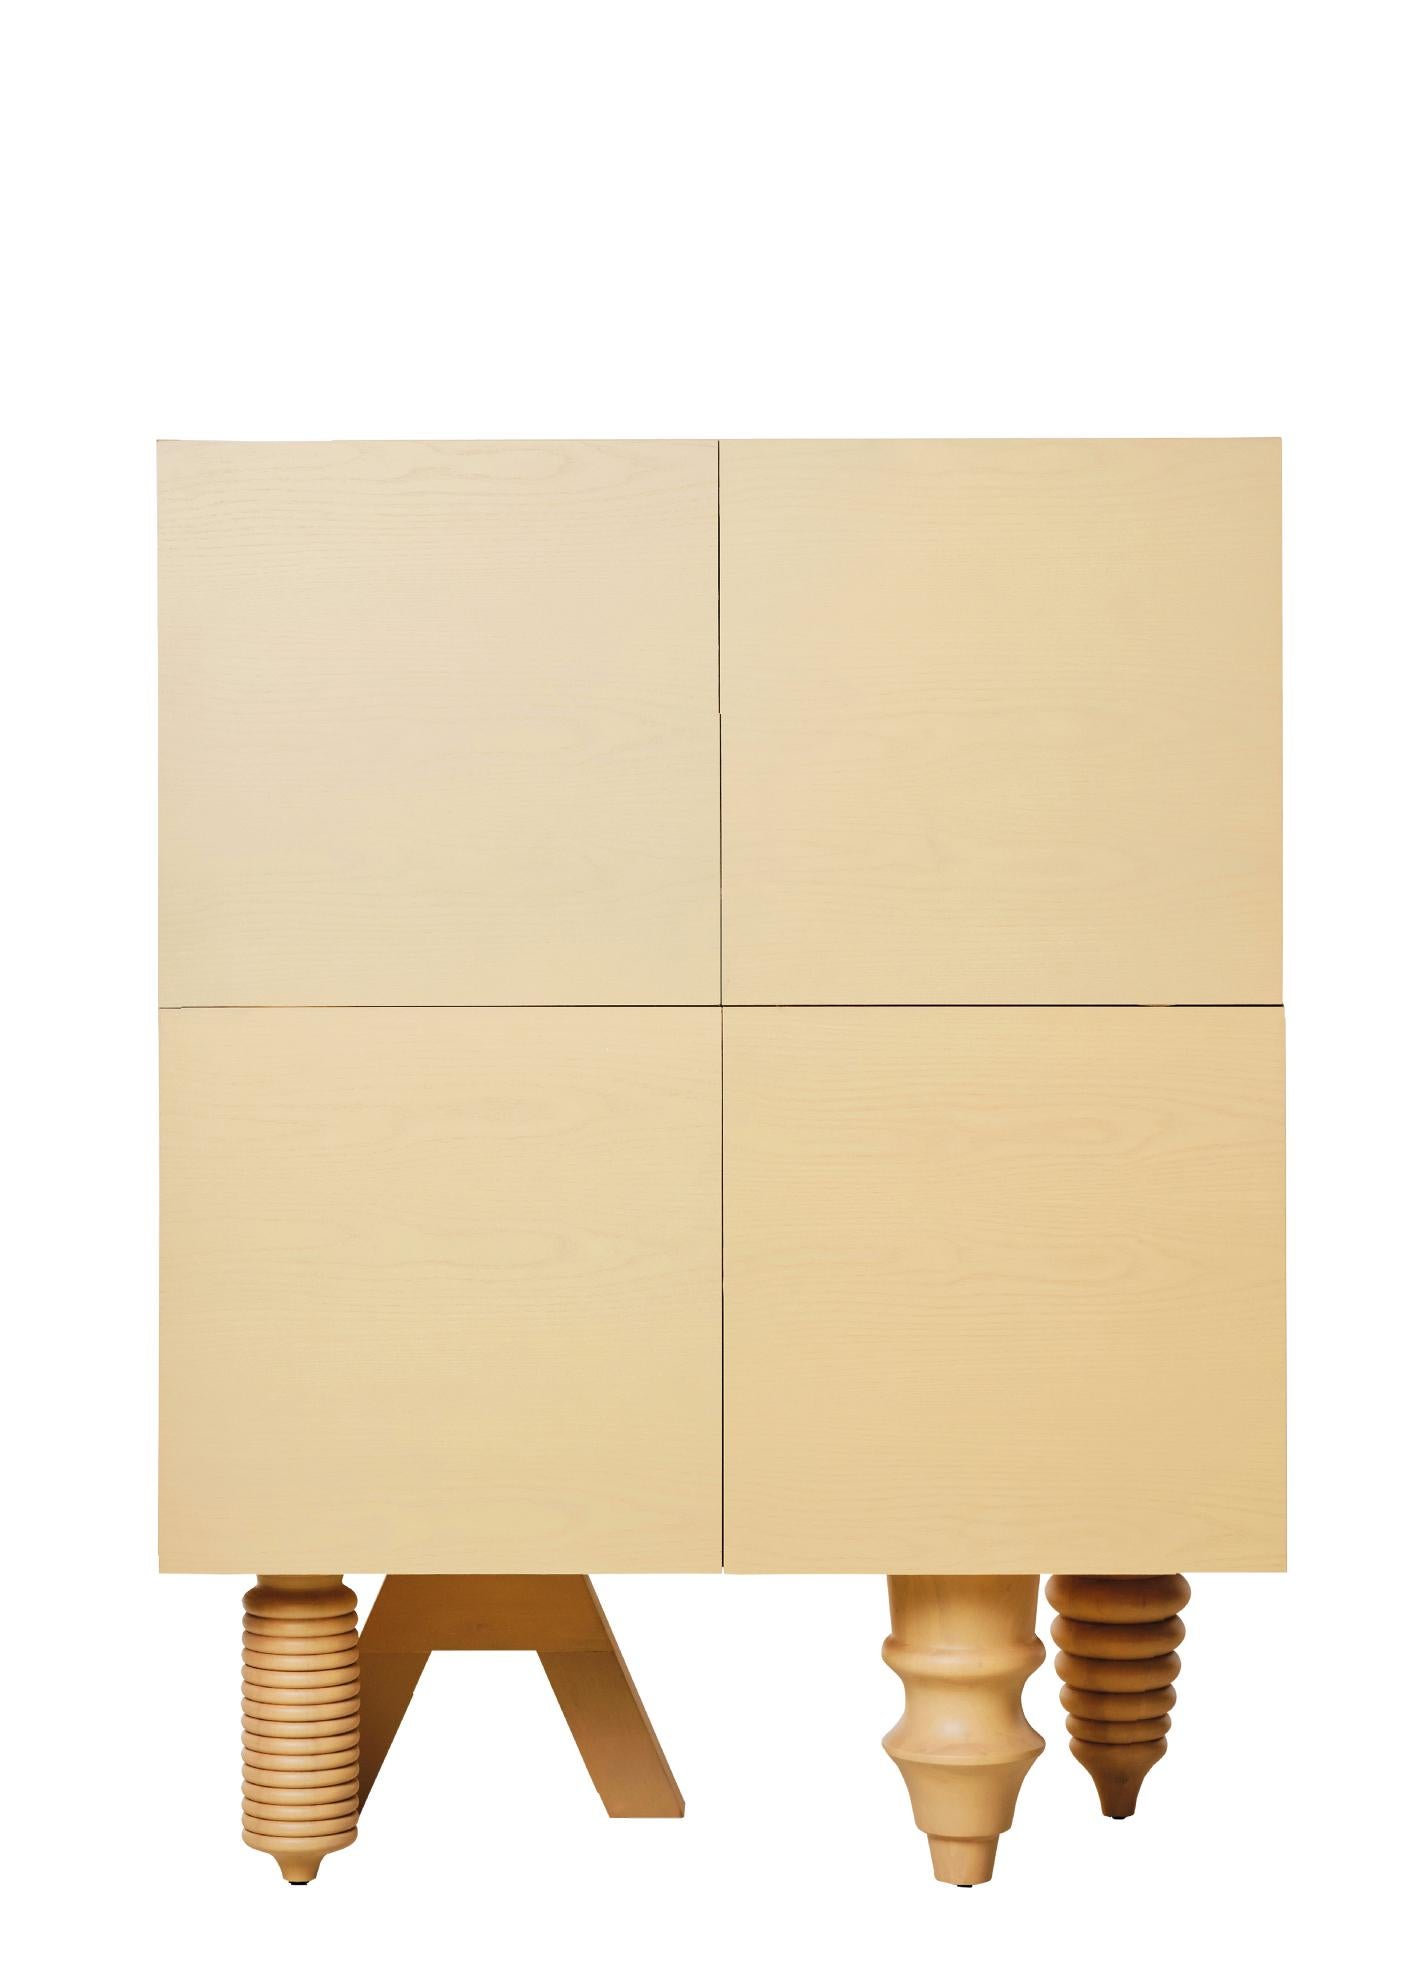 Schrank 'Multileg' von Jaime Hayon, Gelb, 100 cm

Abmessungen: 
100 x 50 x 130 cm 
39,4 x 19,6 x 51'2 